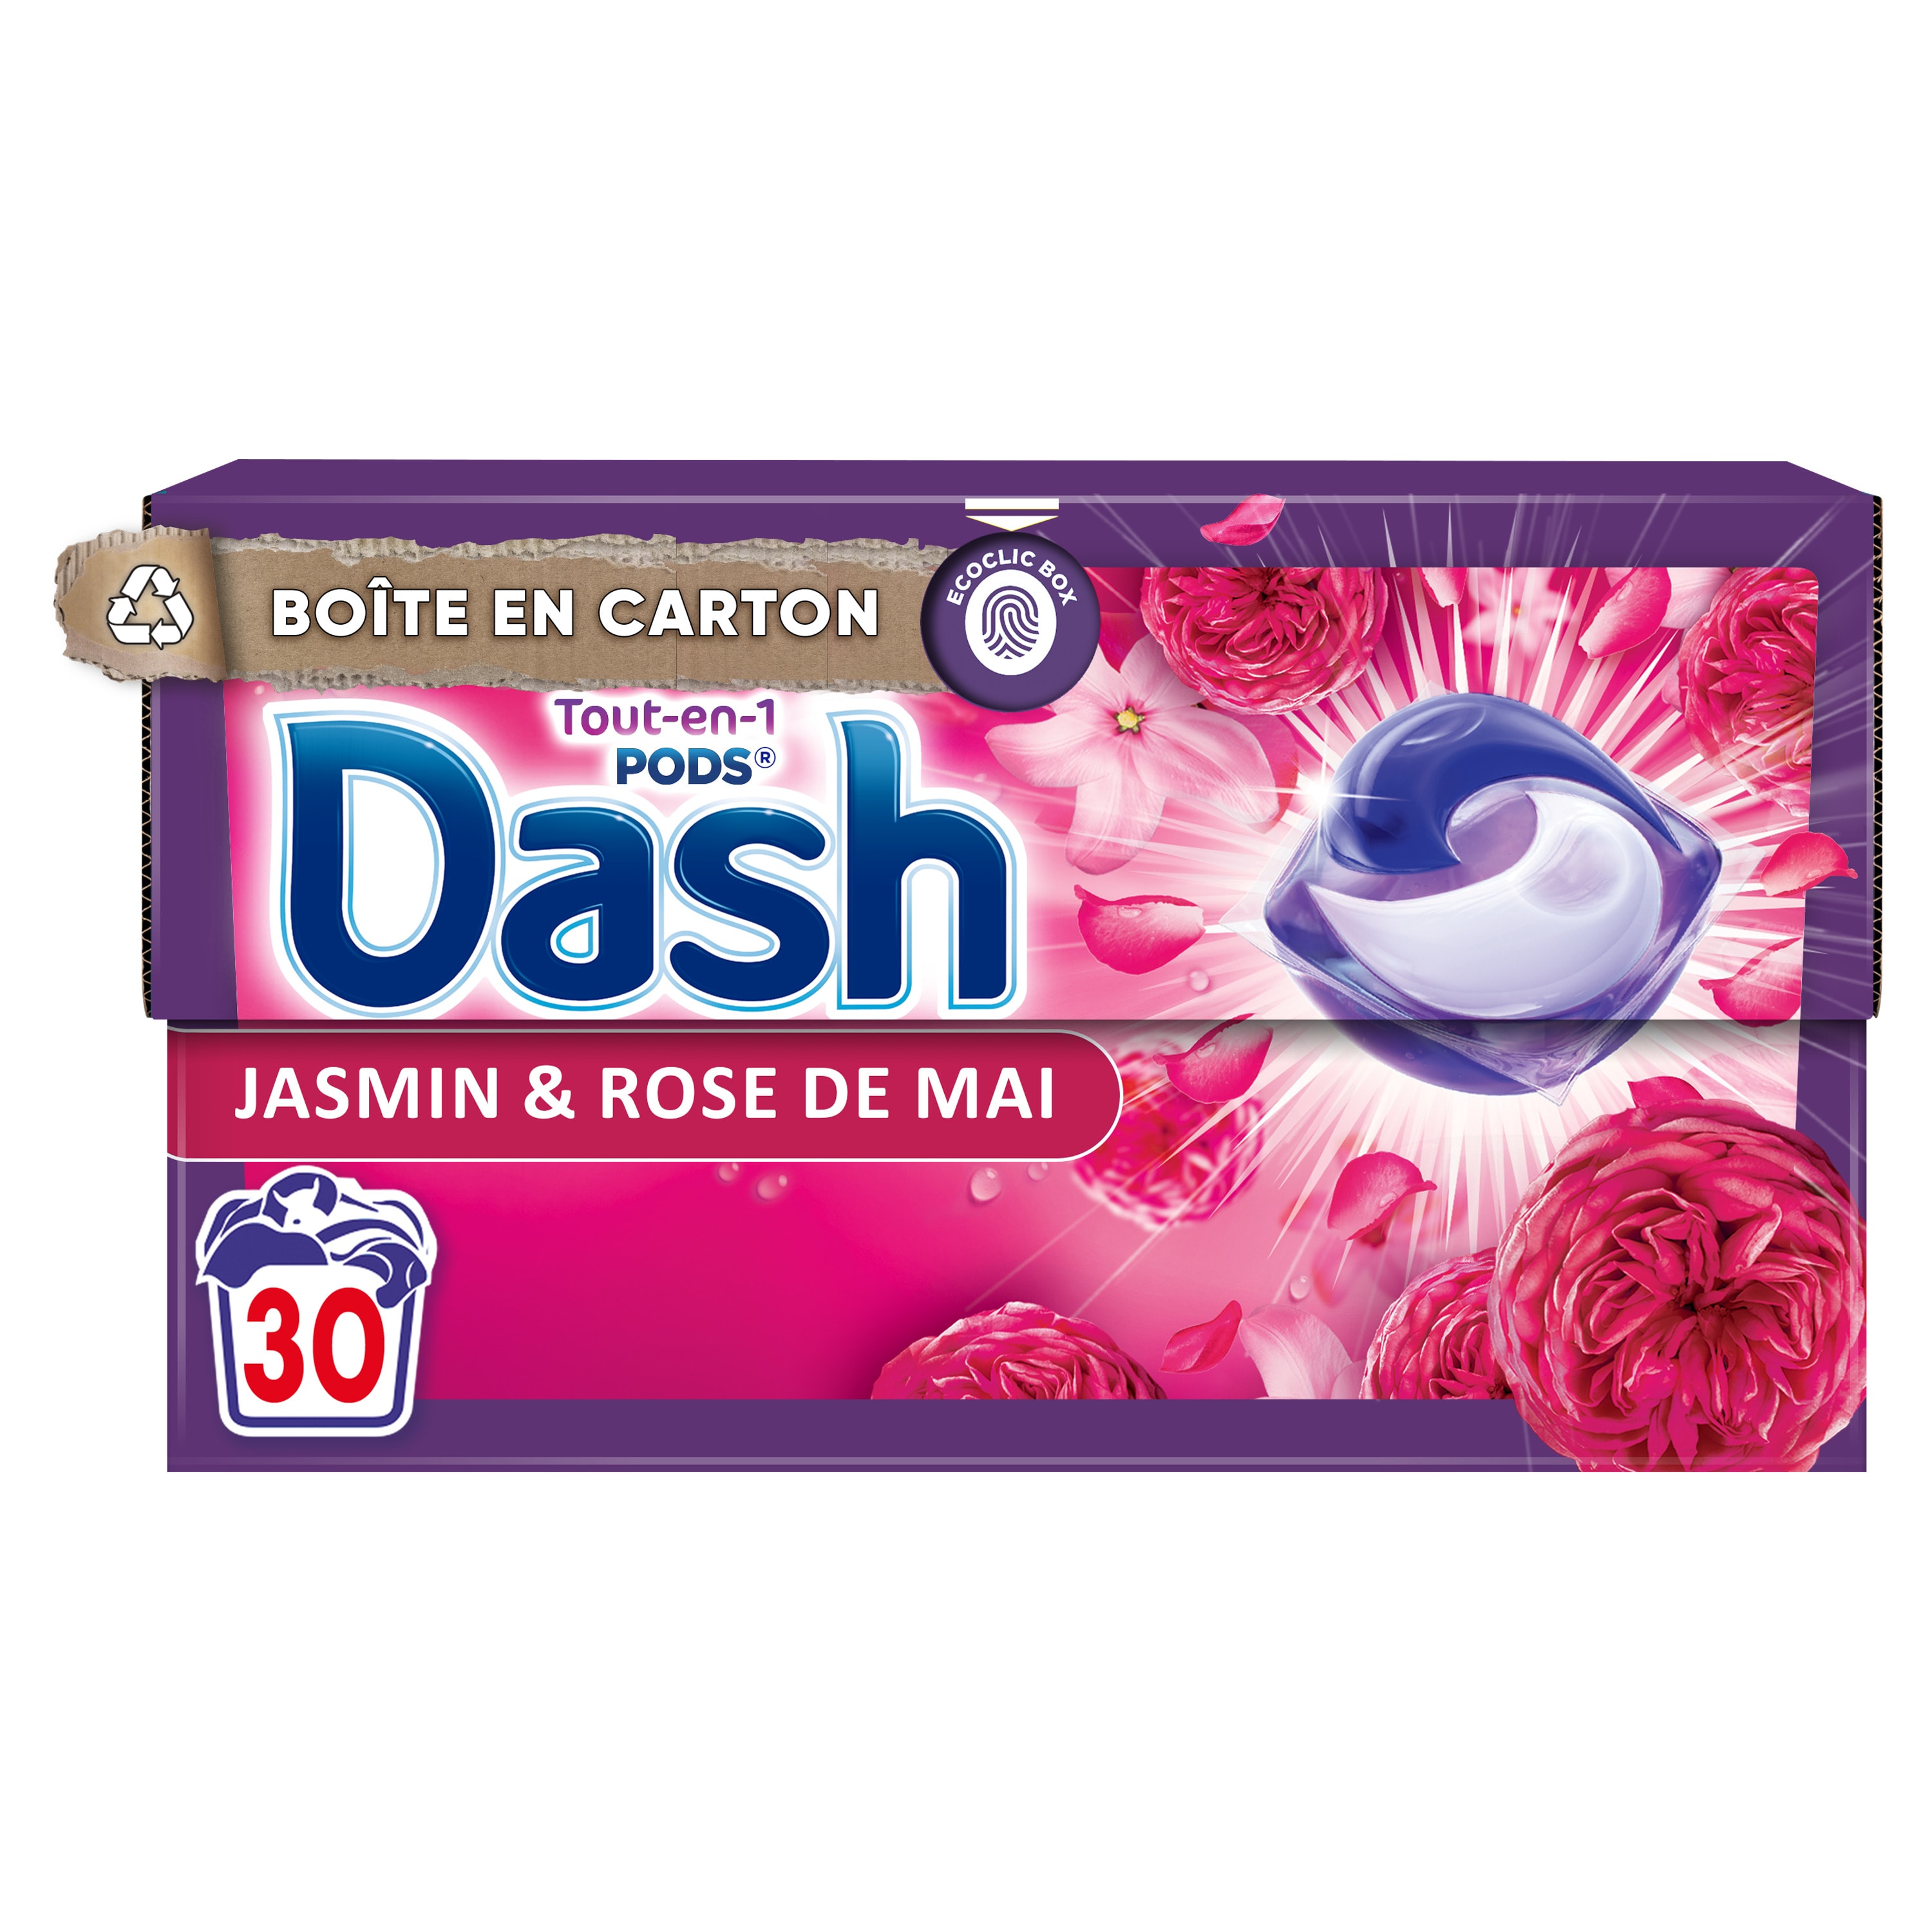 Promo Dash 2 en 1 - Lessive Liquide 1,75 L à 3 pour 18.30 € - 35